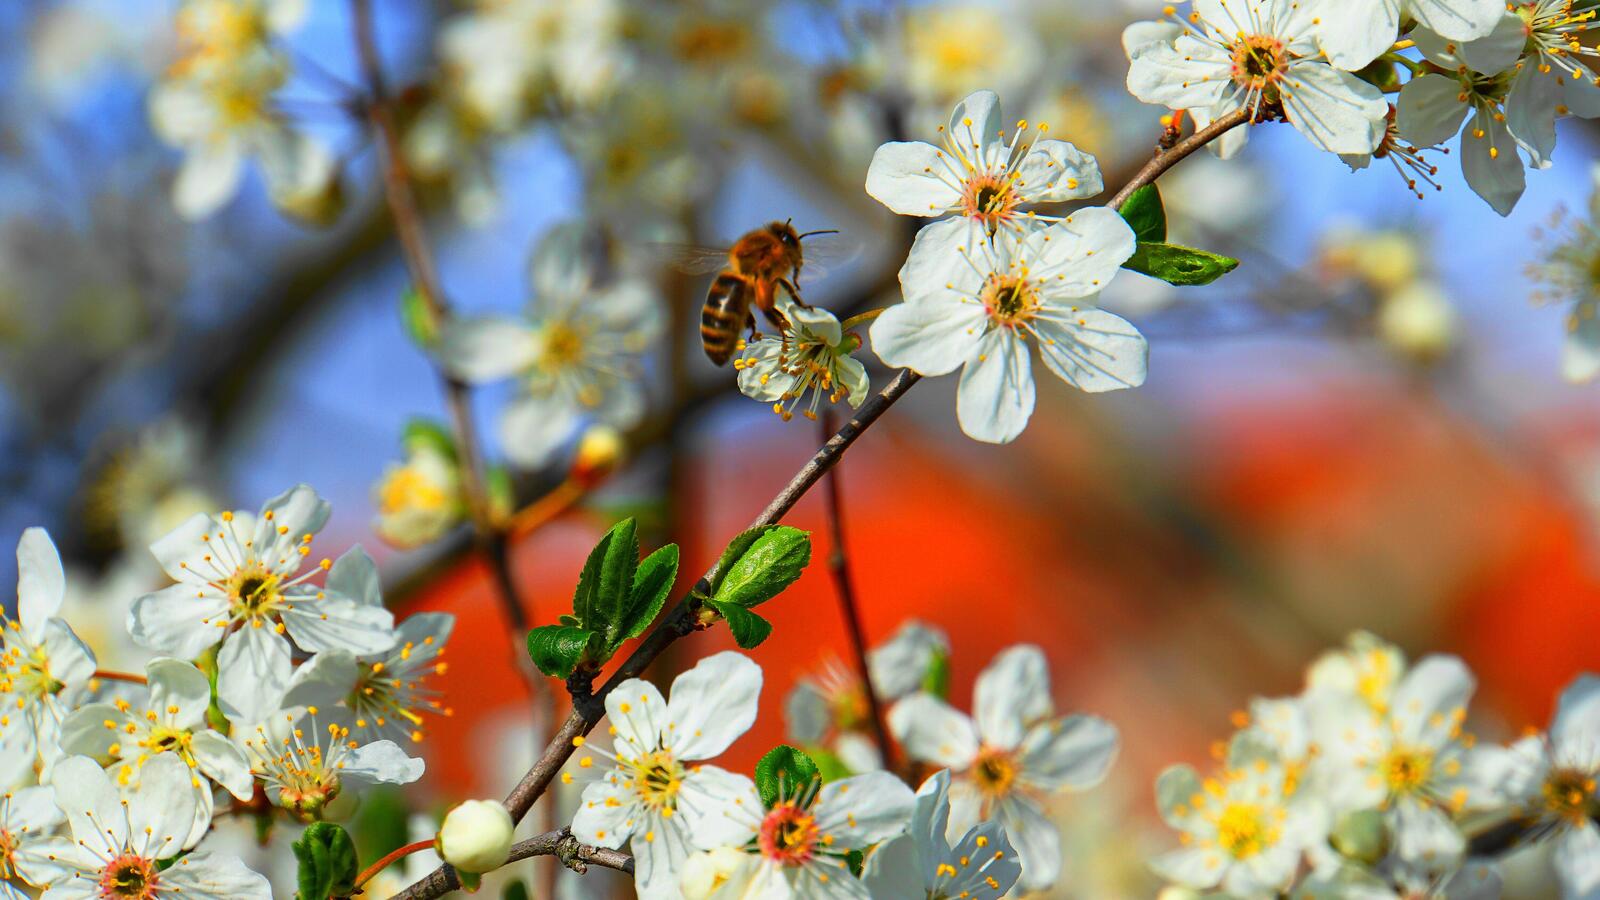 Бесплатное фото Пчела собирает нектар с белых маленьких цветочков